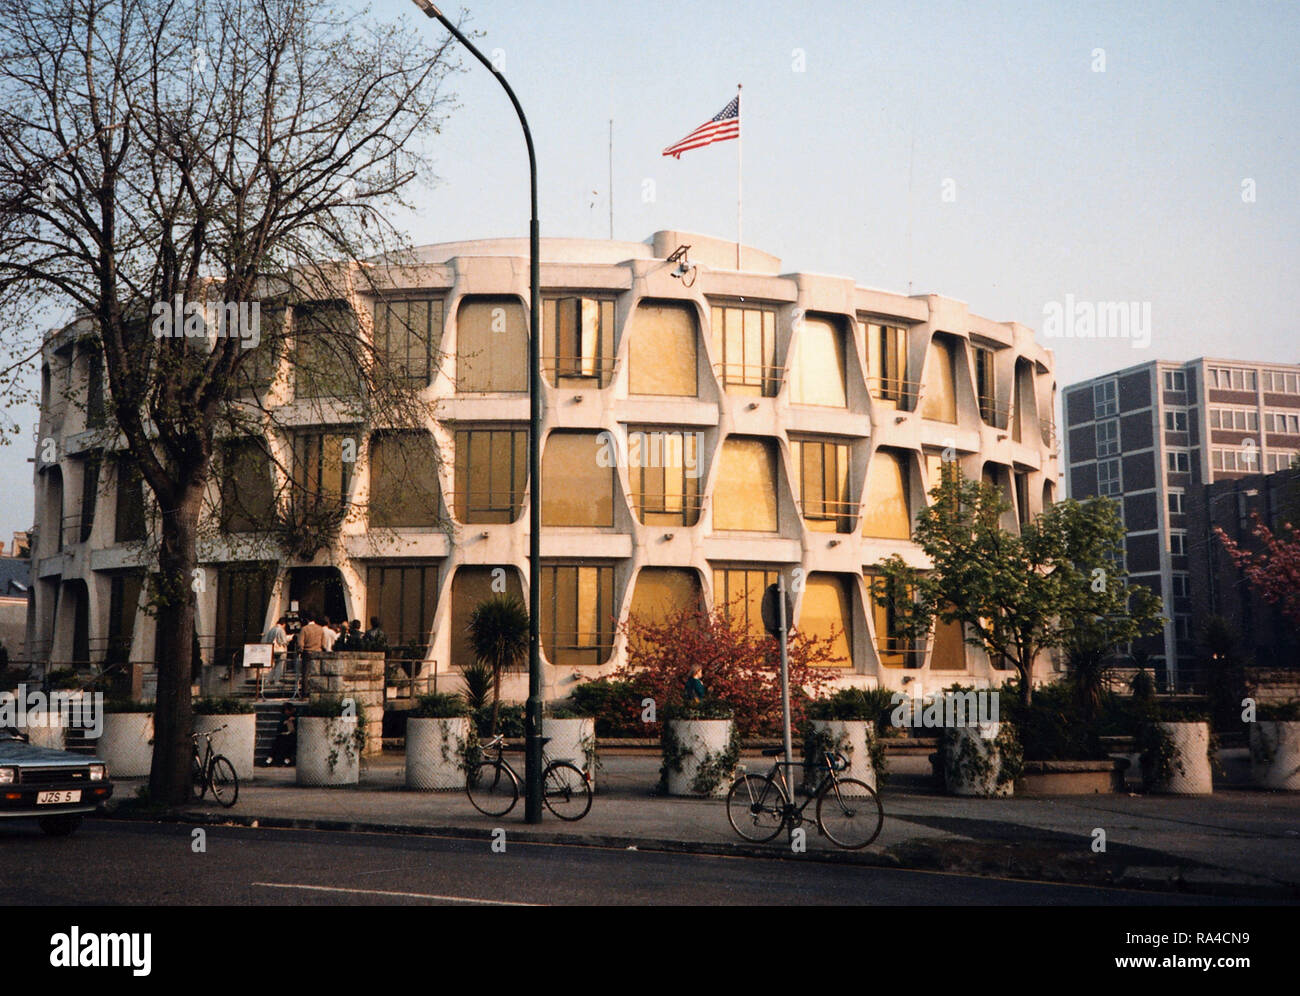 Les ambassades consulats et bâtiments de la chancellerie - Irlande - Dublin - Ambassade des États-Unis 1987 Banque D'Images